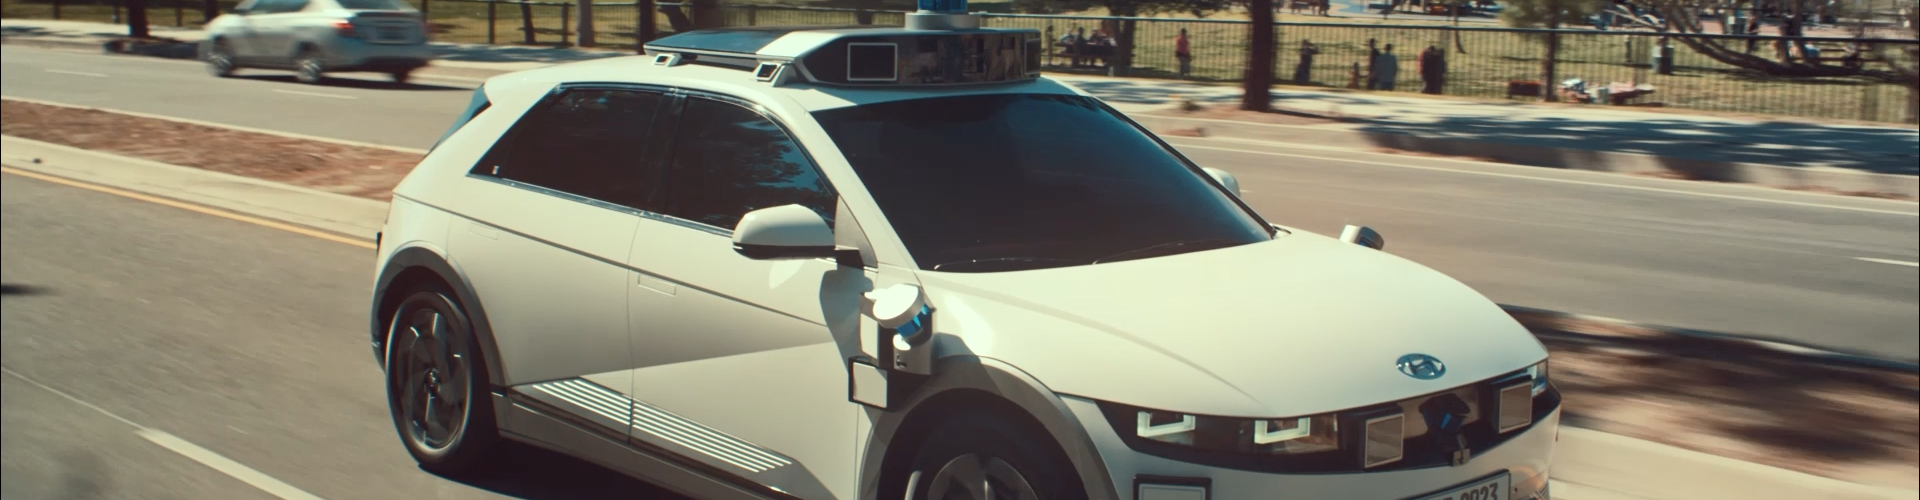 Hyundai Motor przedstawia wizję autonomicznej taksówki bazującej na modelu IONIQ 5